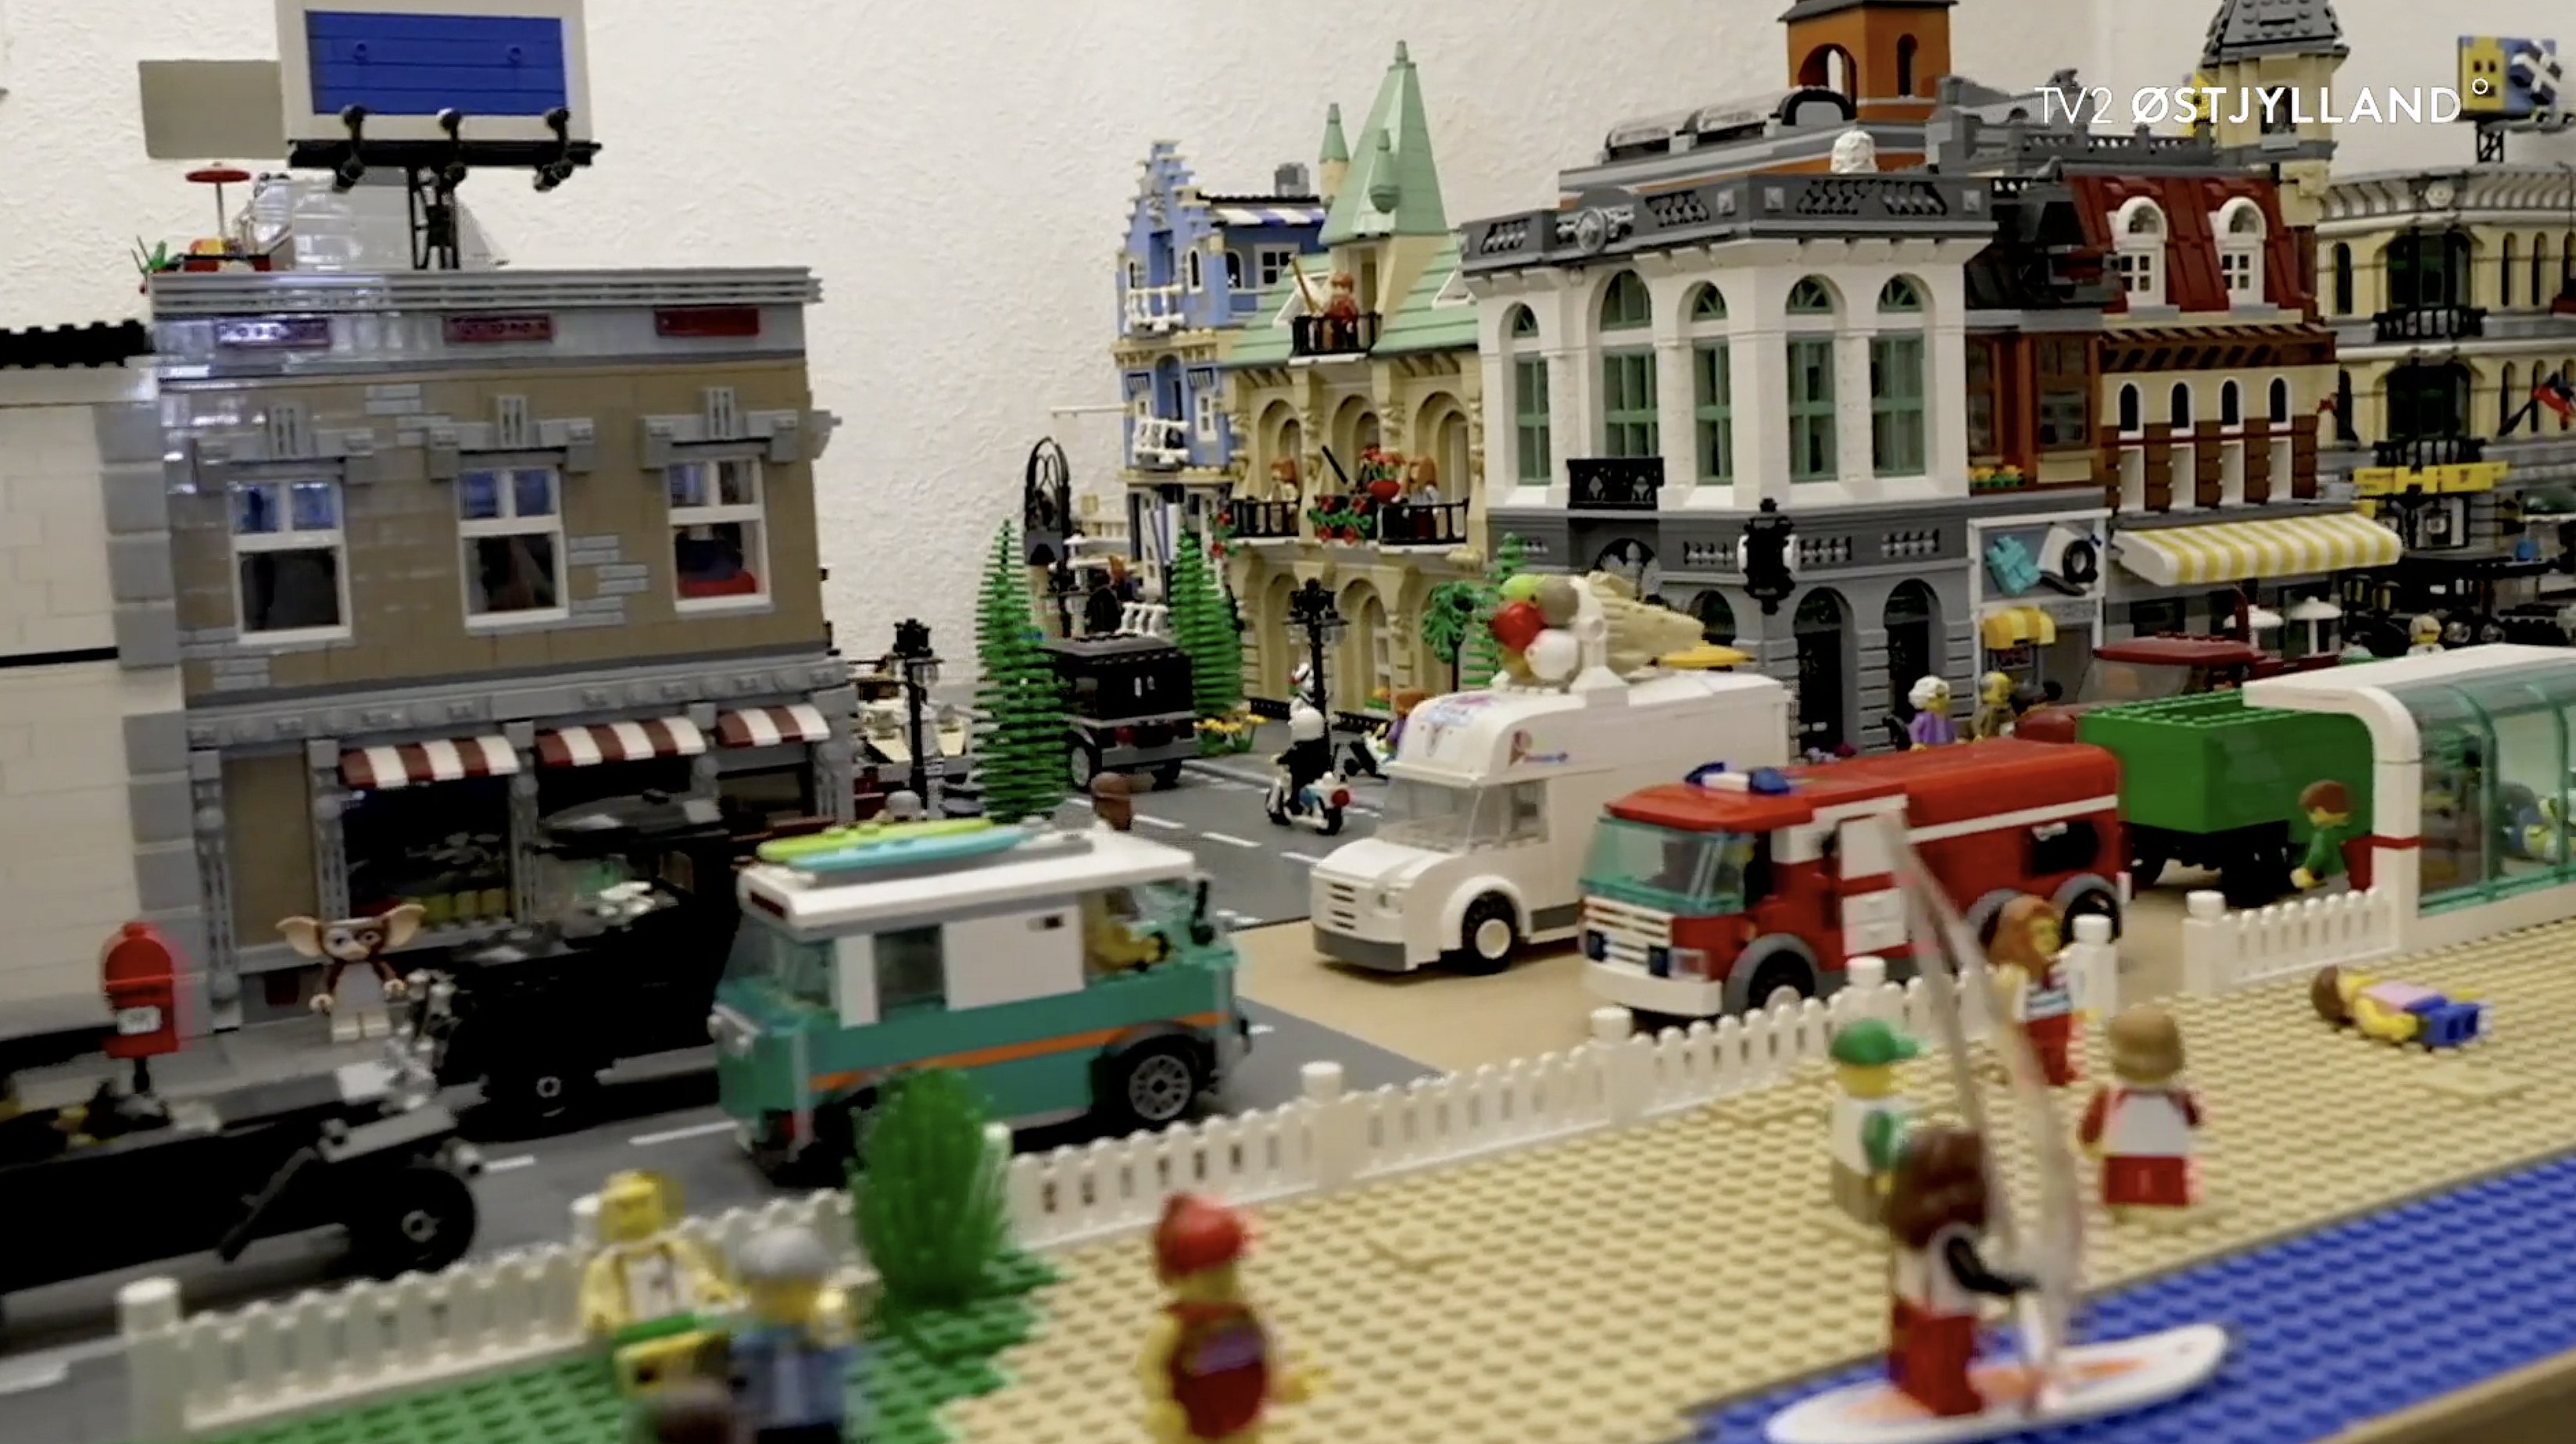 Jan droppede soveværelset for Legos skyld | TV2